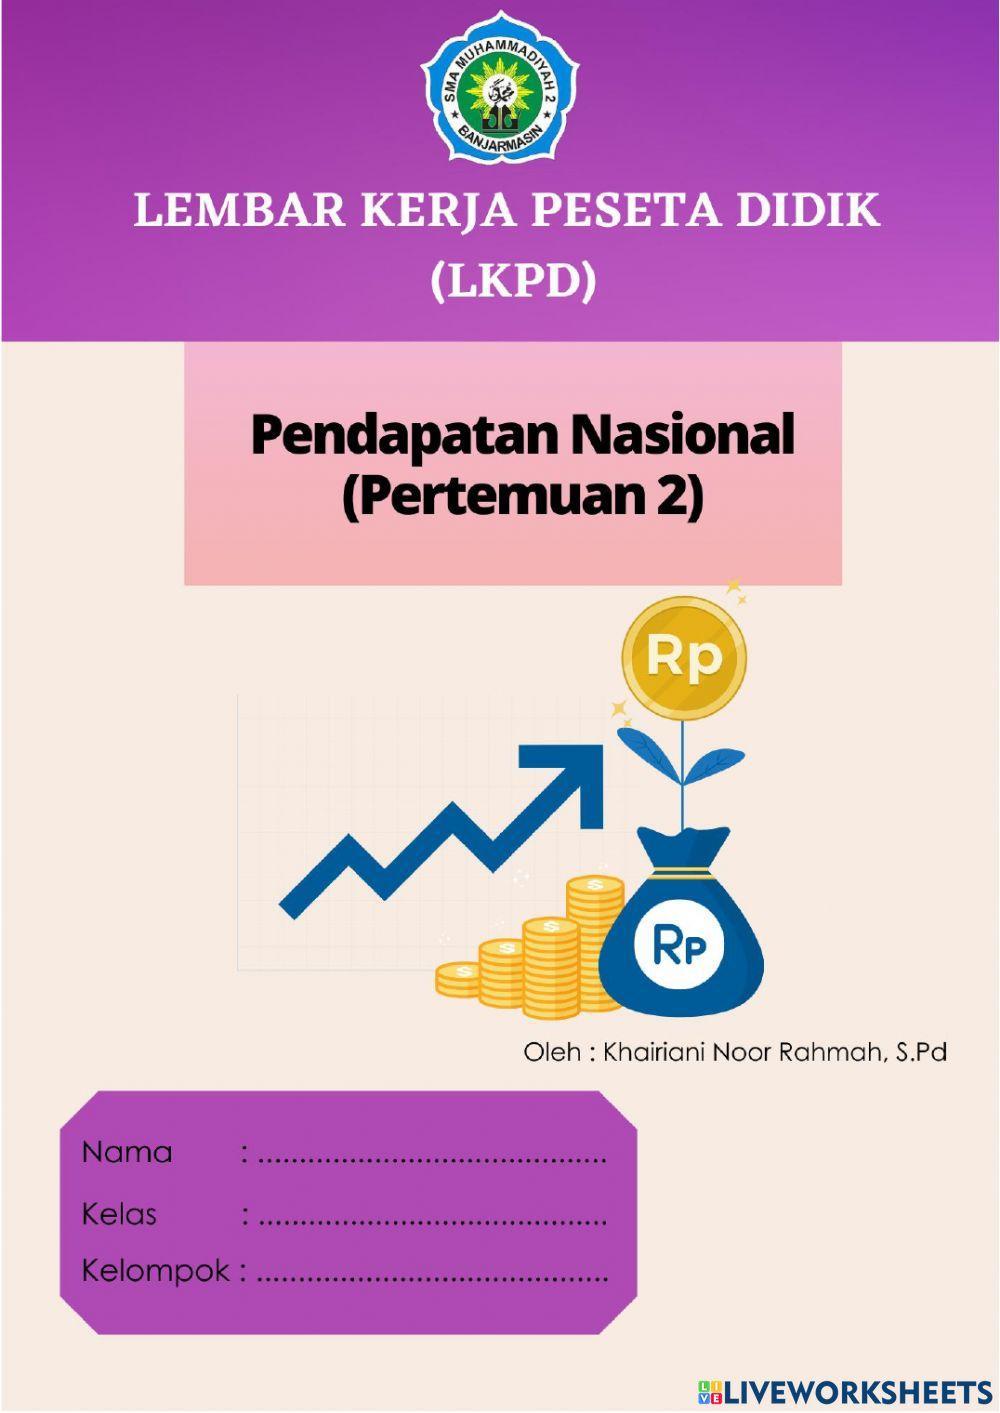 Lkpd per 2 pendapatan nasional